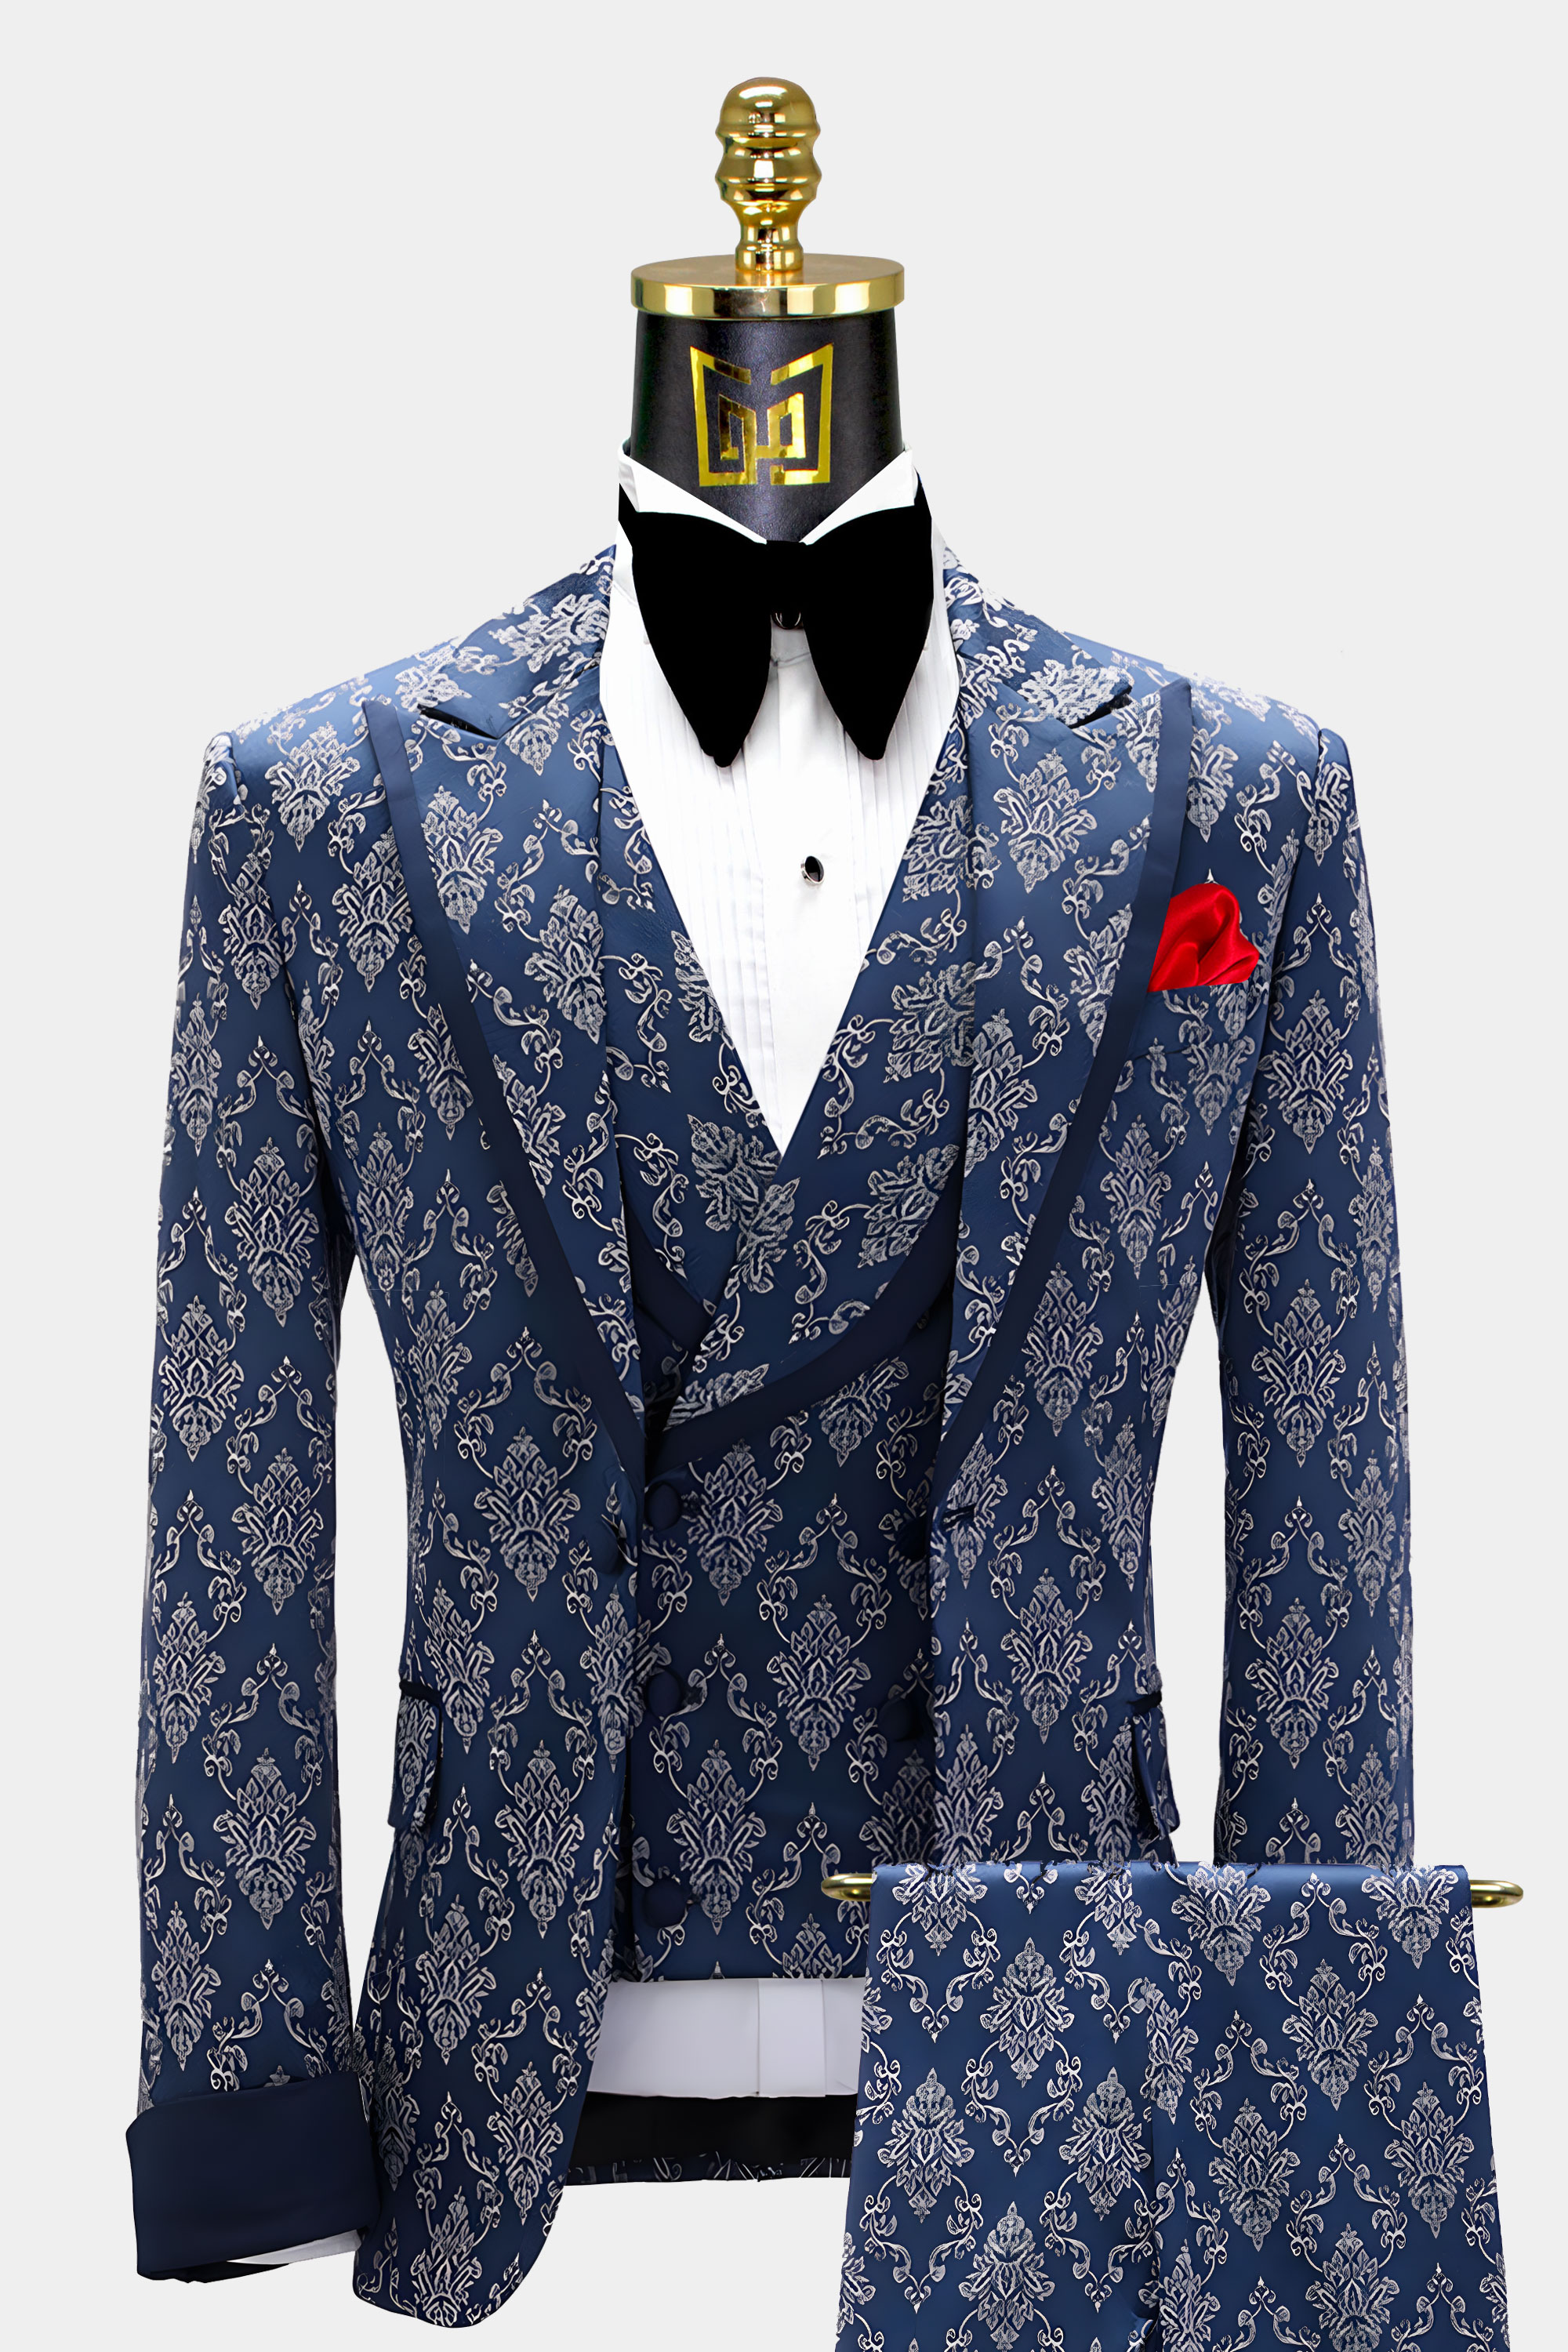 Mens-Navy-Blue-and-Grey-Tuxedo-Groom-Wedding-Prom-Suit-from-Gentlemansguru.com